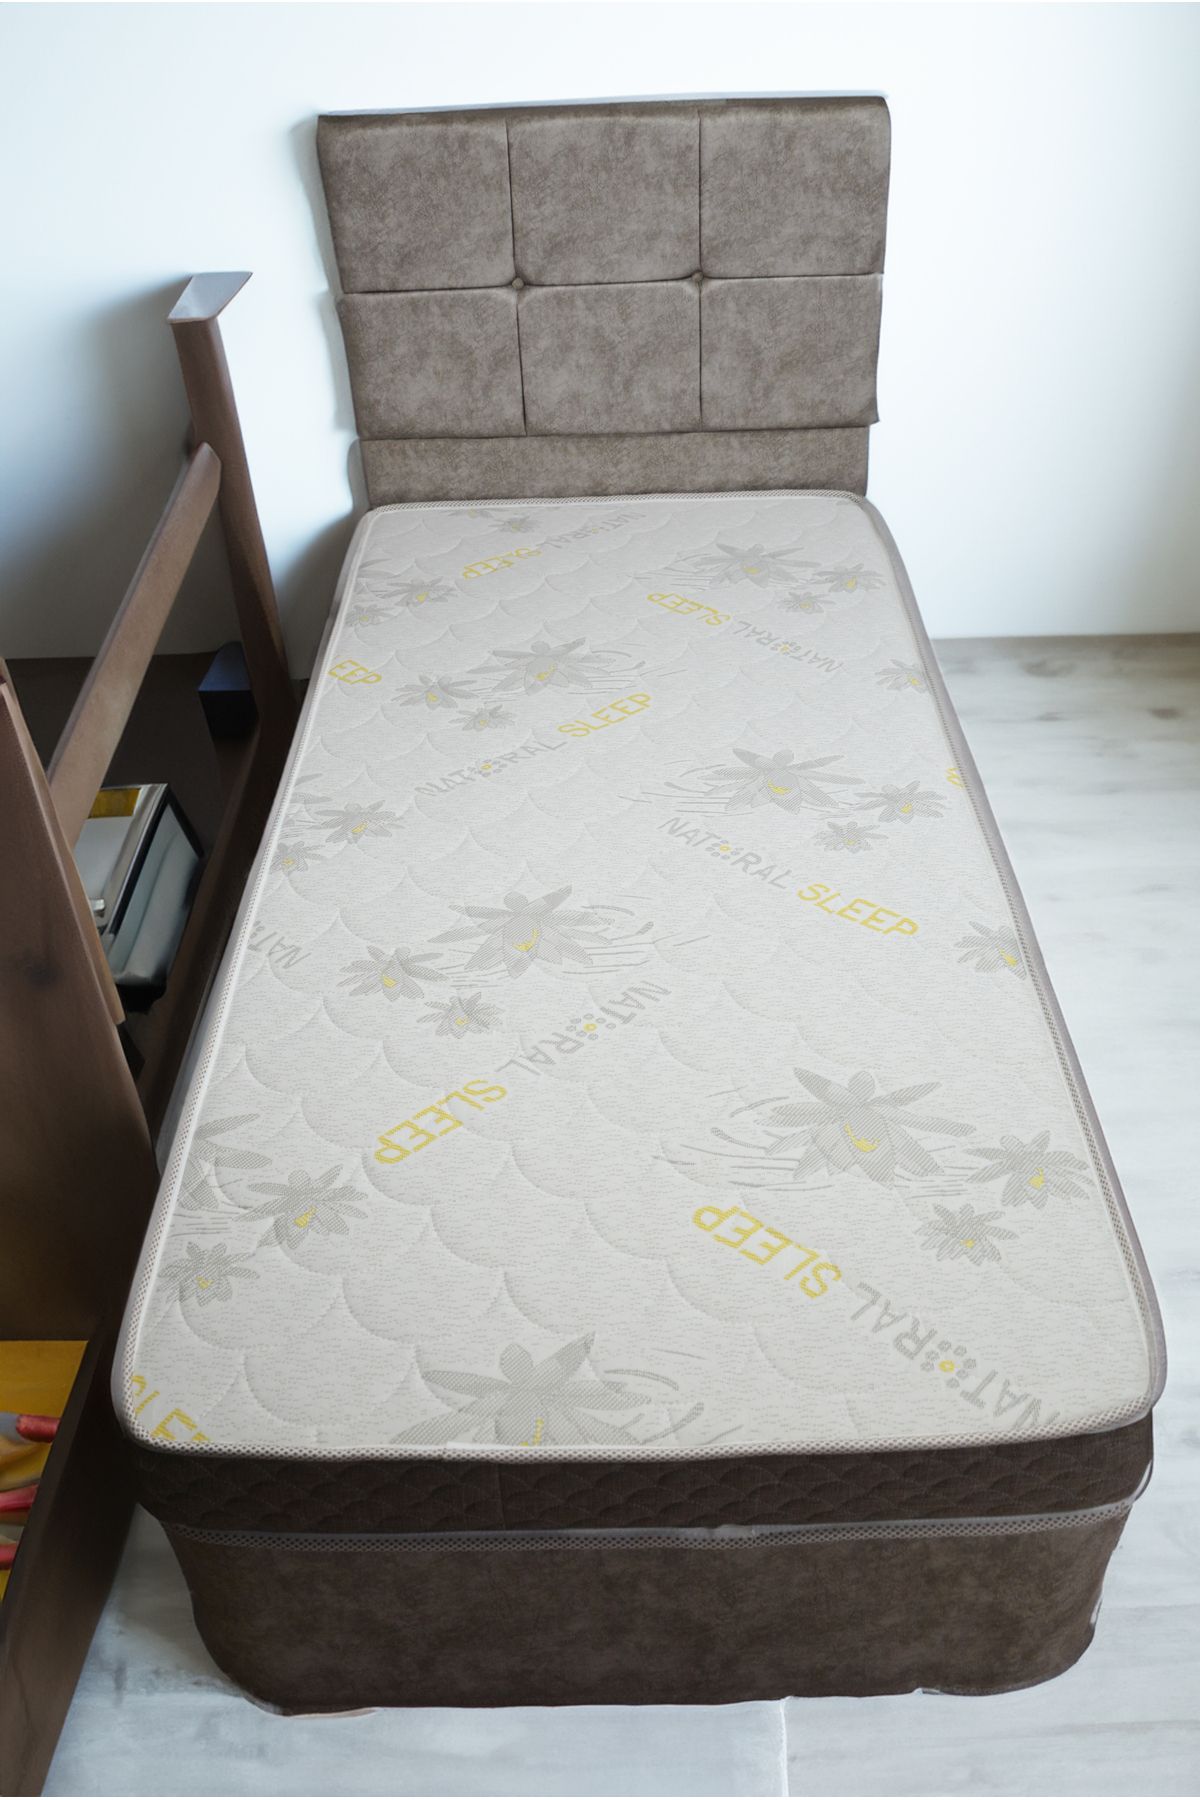 Bedart 15 Cm Tek Kişilik Sünger Baza Yatağı, Unisex Full Ortopedik Yataklar, Lux Çocuk Baza Yatak Bed Art